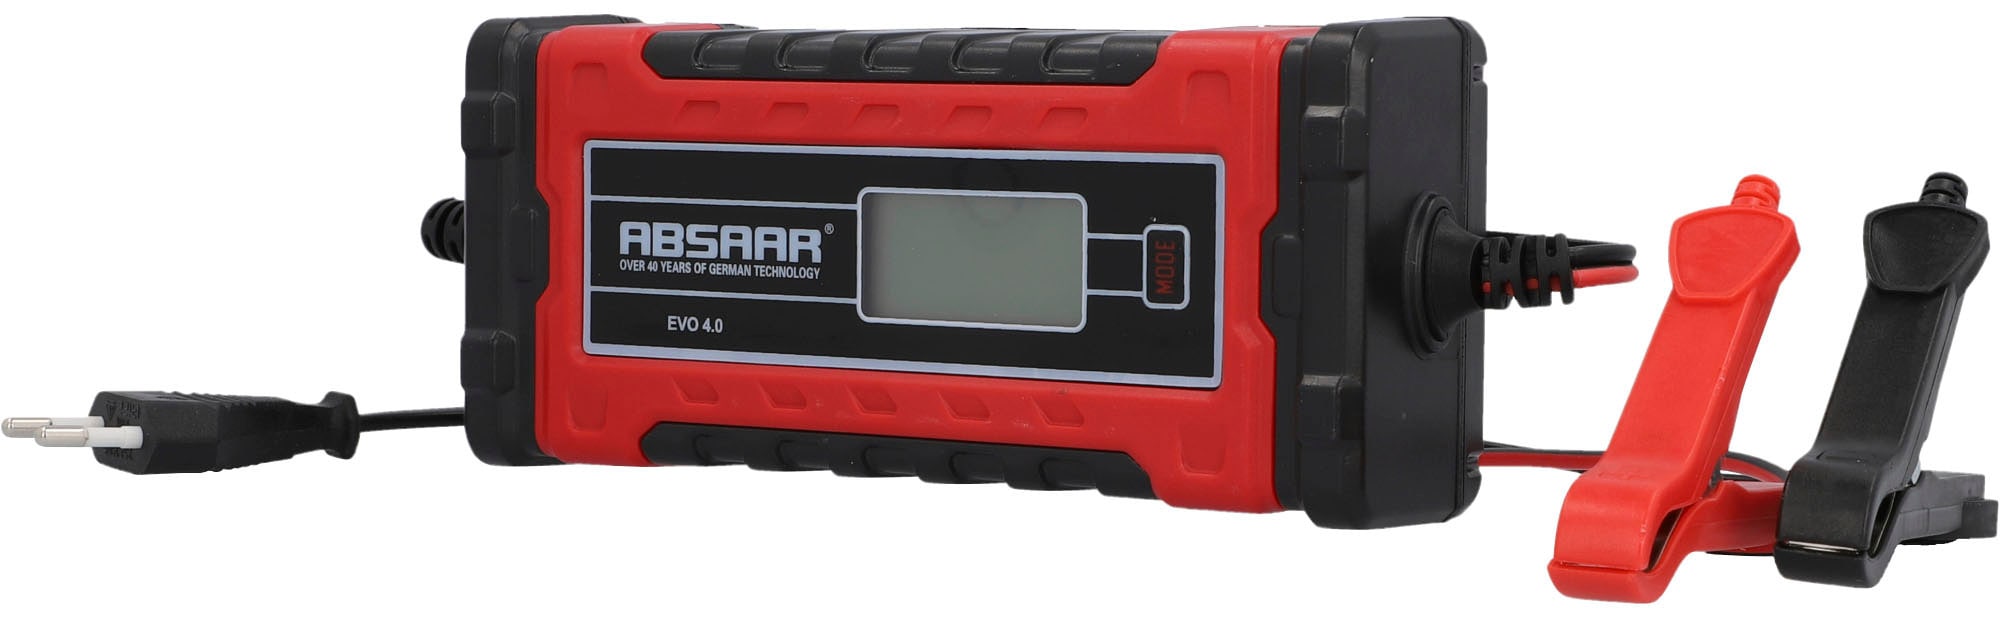 Absaar EVO 6.0 Batterie-Ladegerät (6000 mA, 12/24 V)